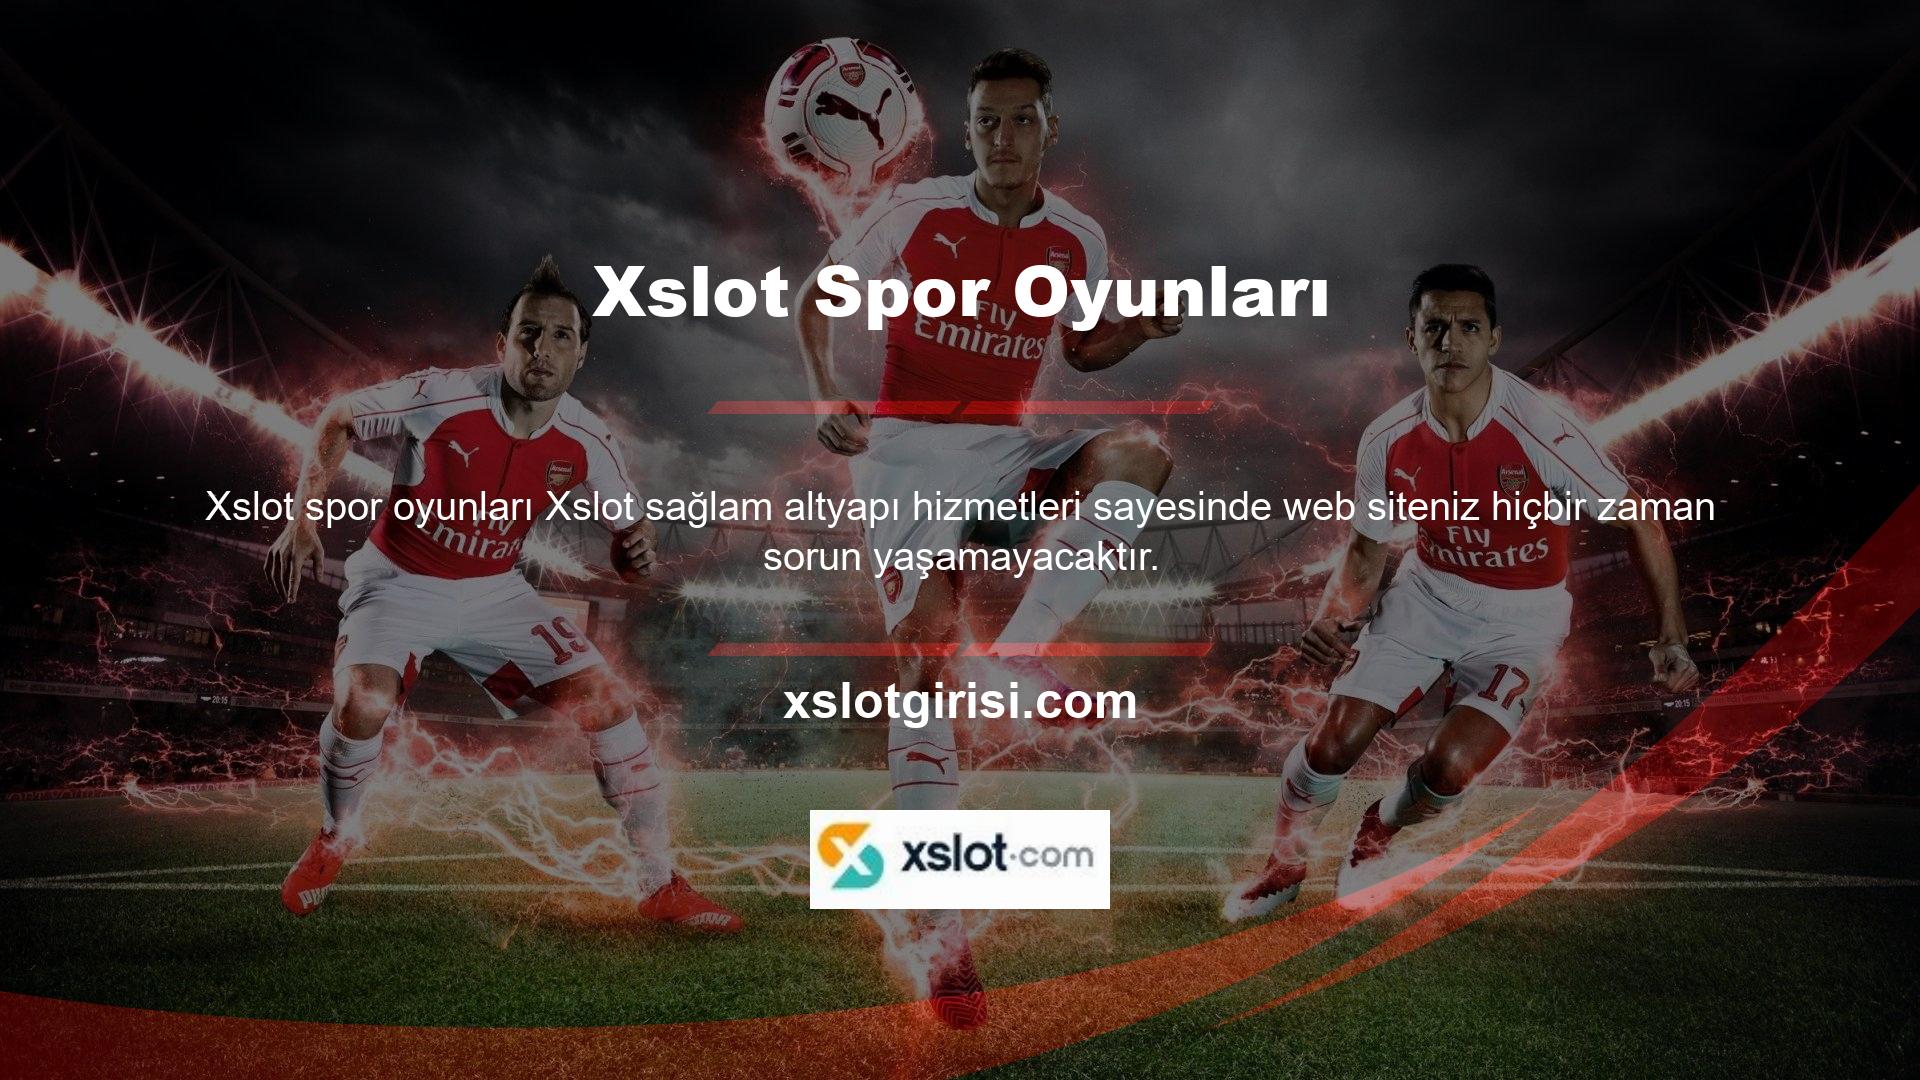 Xslot, sorunsuz bir spor bahis deneyimi sağlamak için çeşitli özellikler sunmaktadır